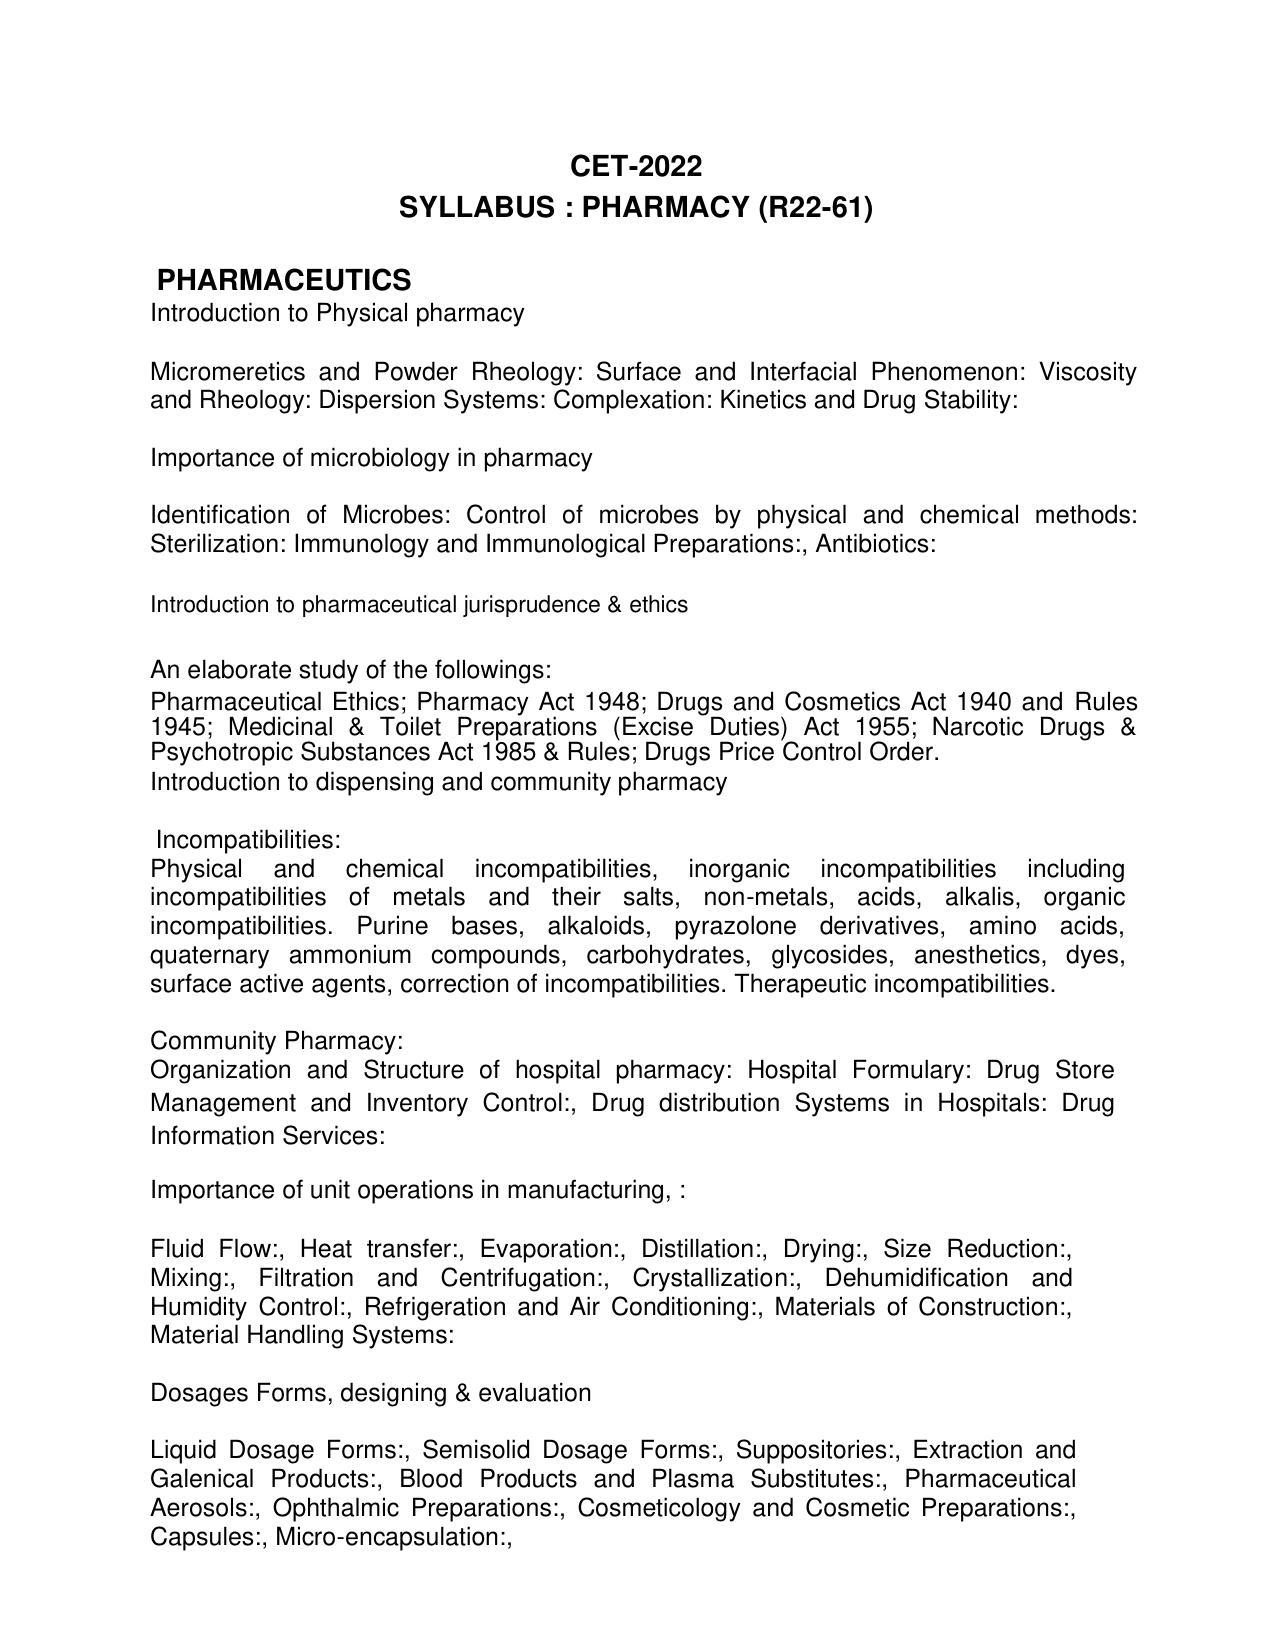 AP RCET Pharmacy Syllabus - Page 1